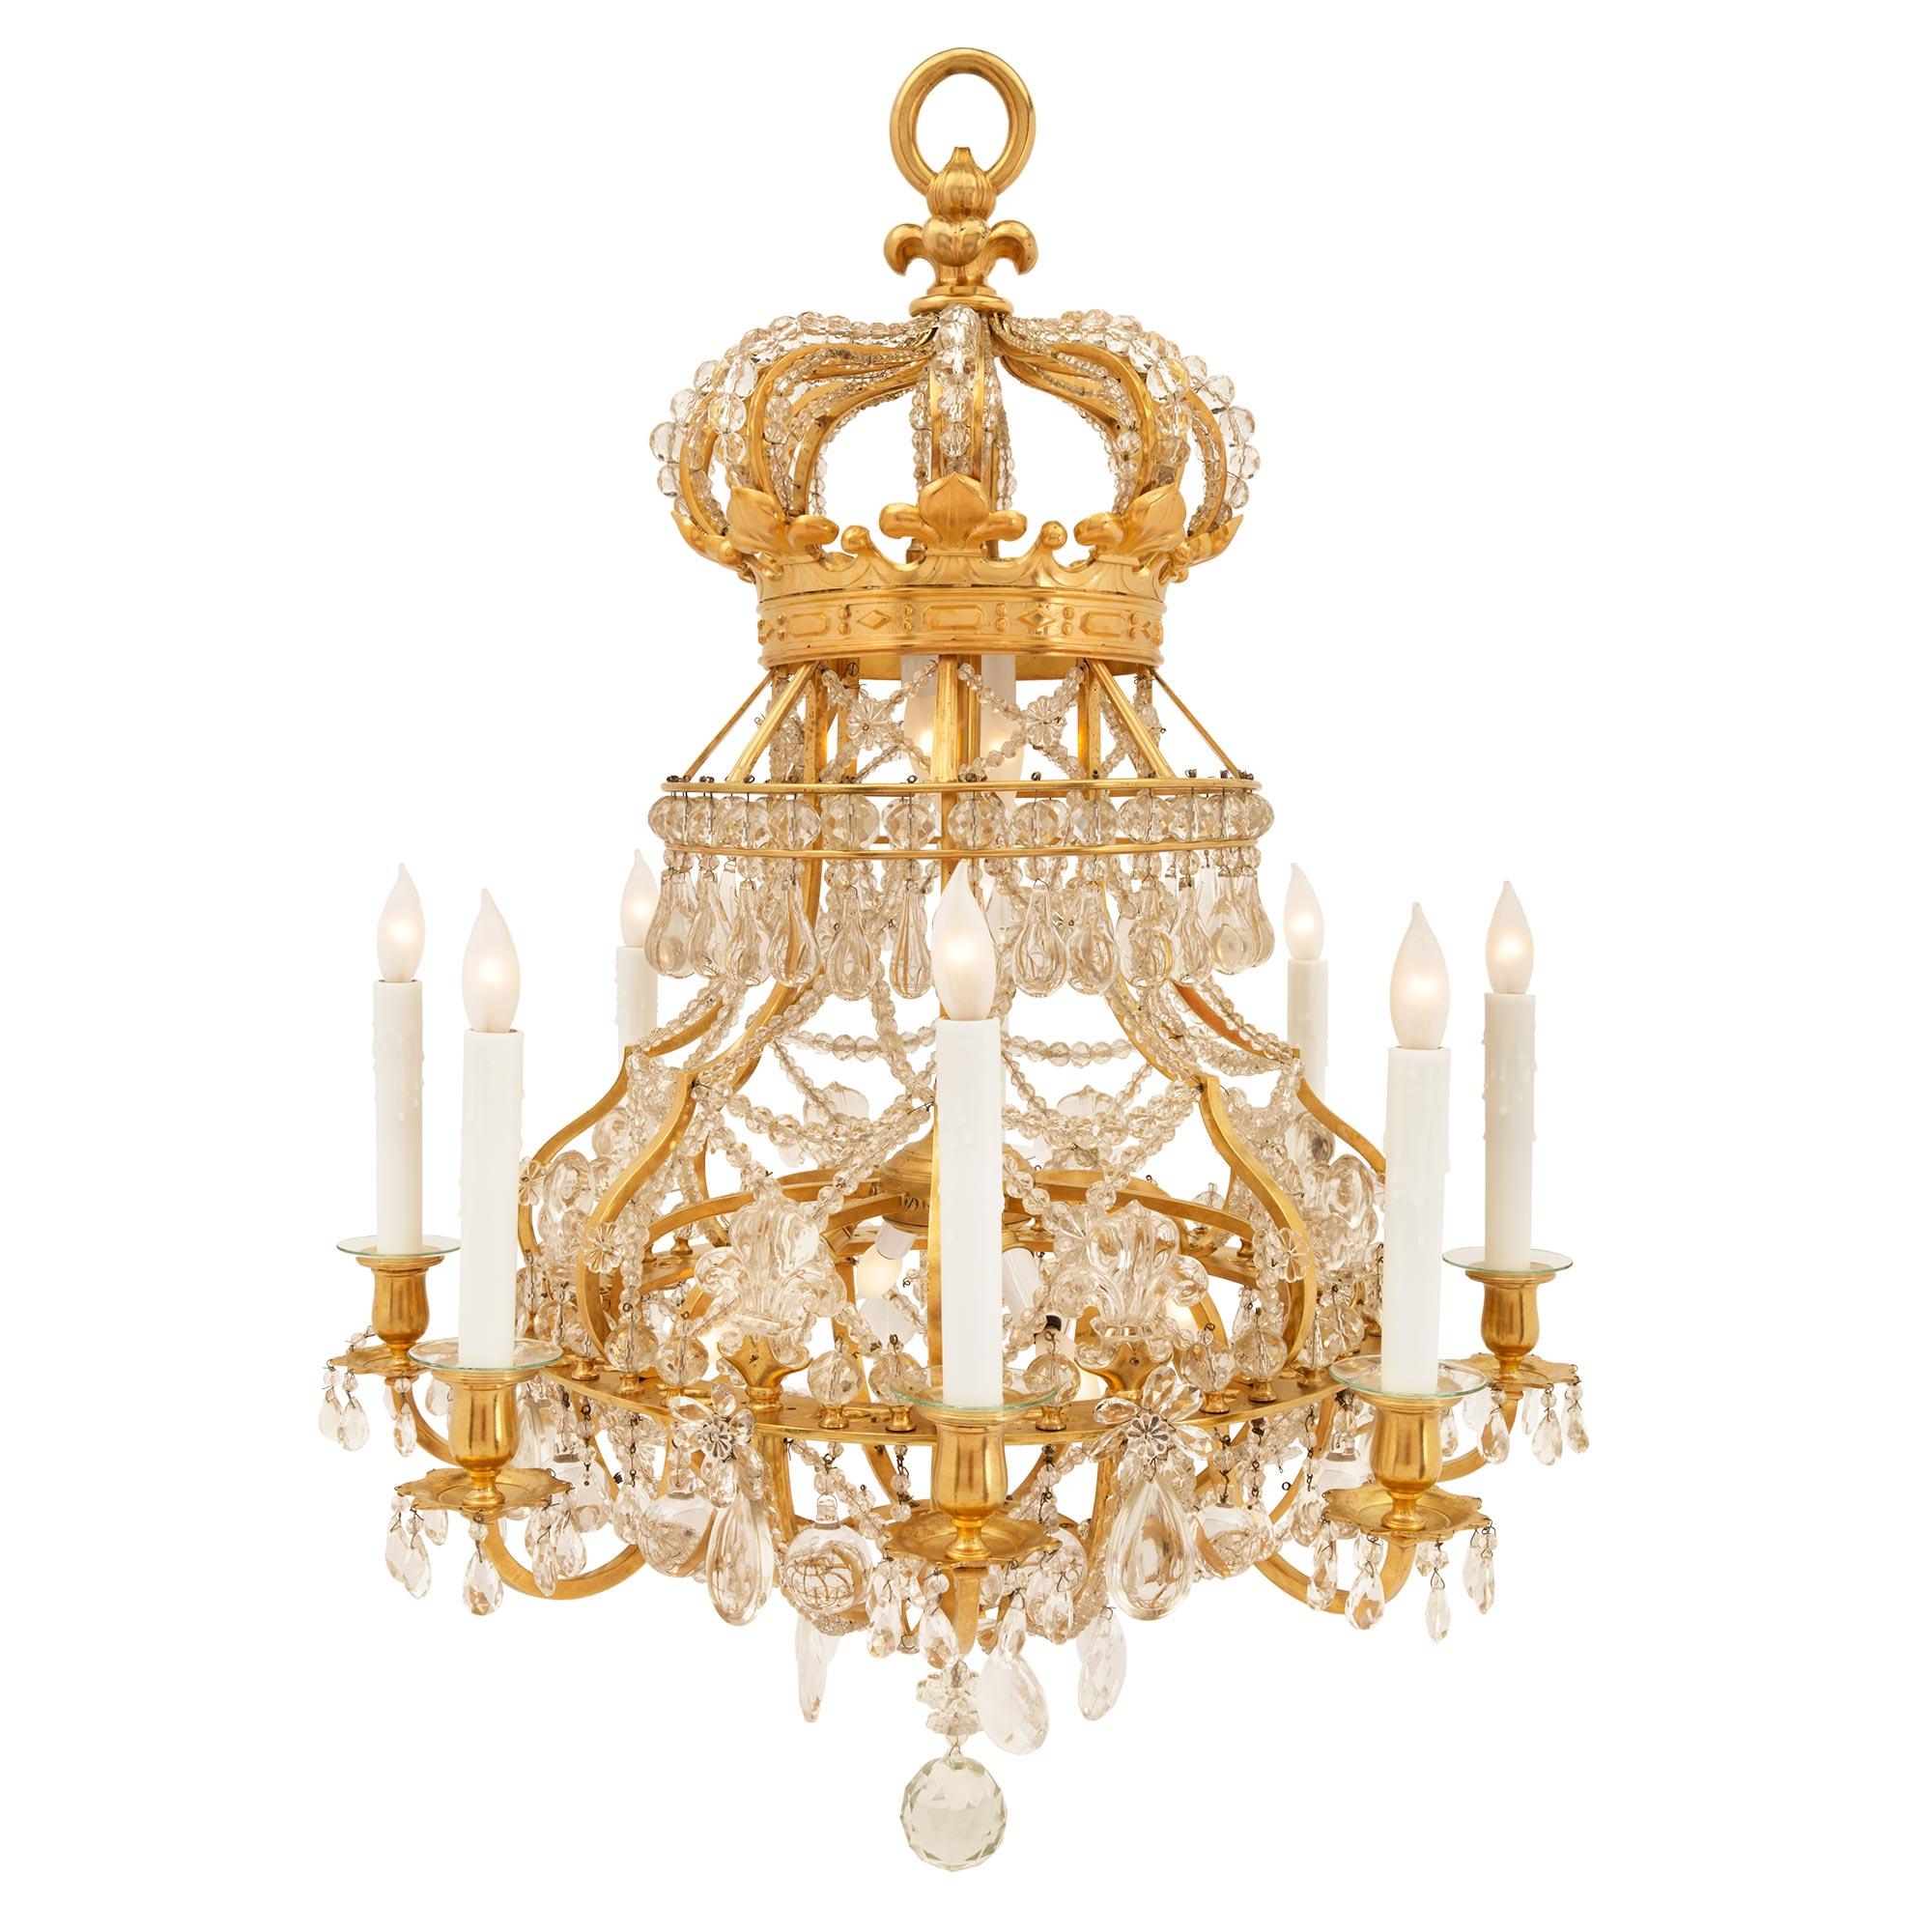 Un sensationnel lustre français du 19ème siècle de style Louis XIV en bronze doré, cristal et verre perlé, à huit bras et quatorze lumières, d'après un modèle royal. Le lustre est centré par un magnifique pendentif boule en cristal massif taillé